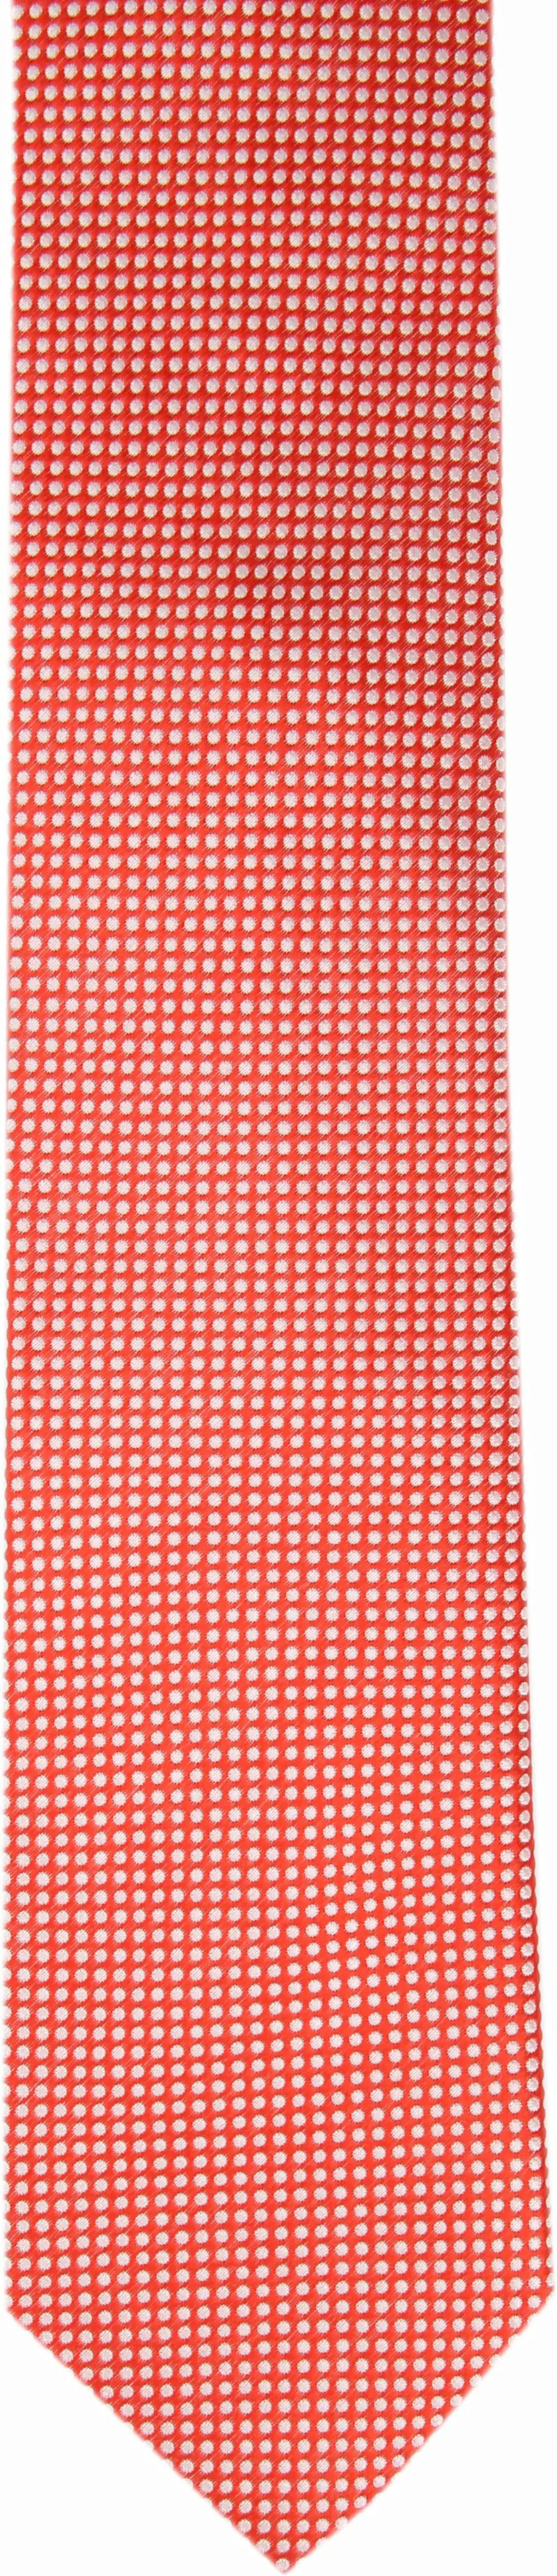 Krawatte Seide Rot Punkte K81-20 - günstig online kaufen